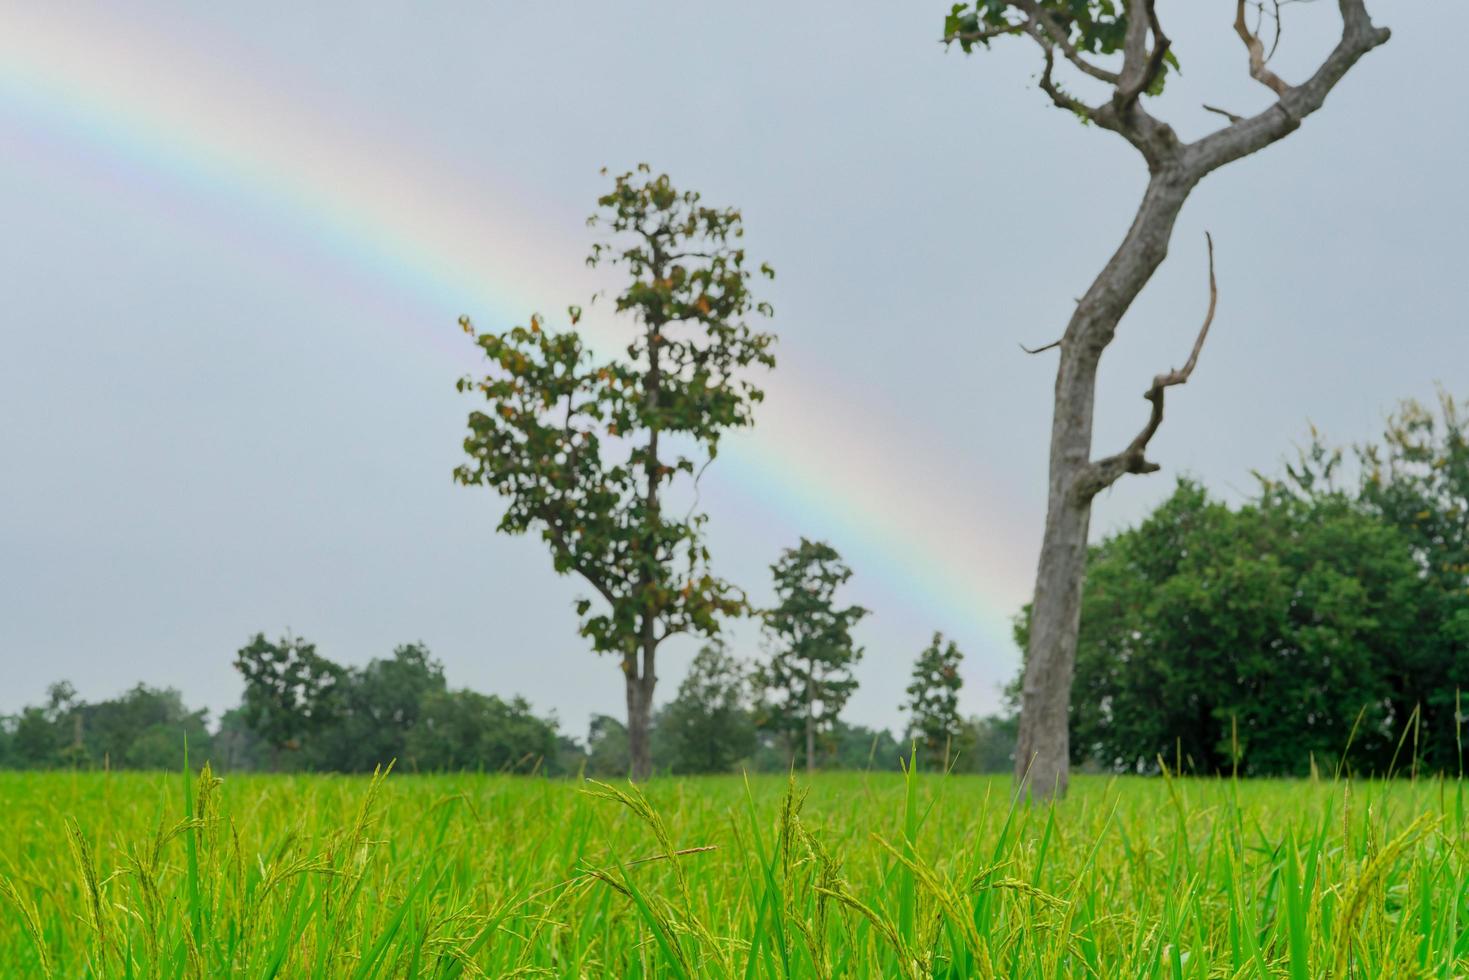 rijst plantage. groen rijstveld. rijst groeiende landbouw. groene rijstveld. op padie gezaaide rijstvelden. het landschap van agrarische boerderij met regenboog aan de hemel in het regenseizoen. foto